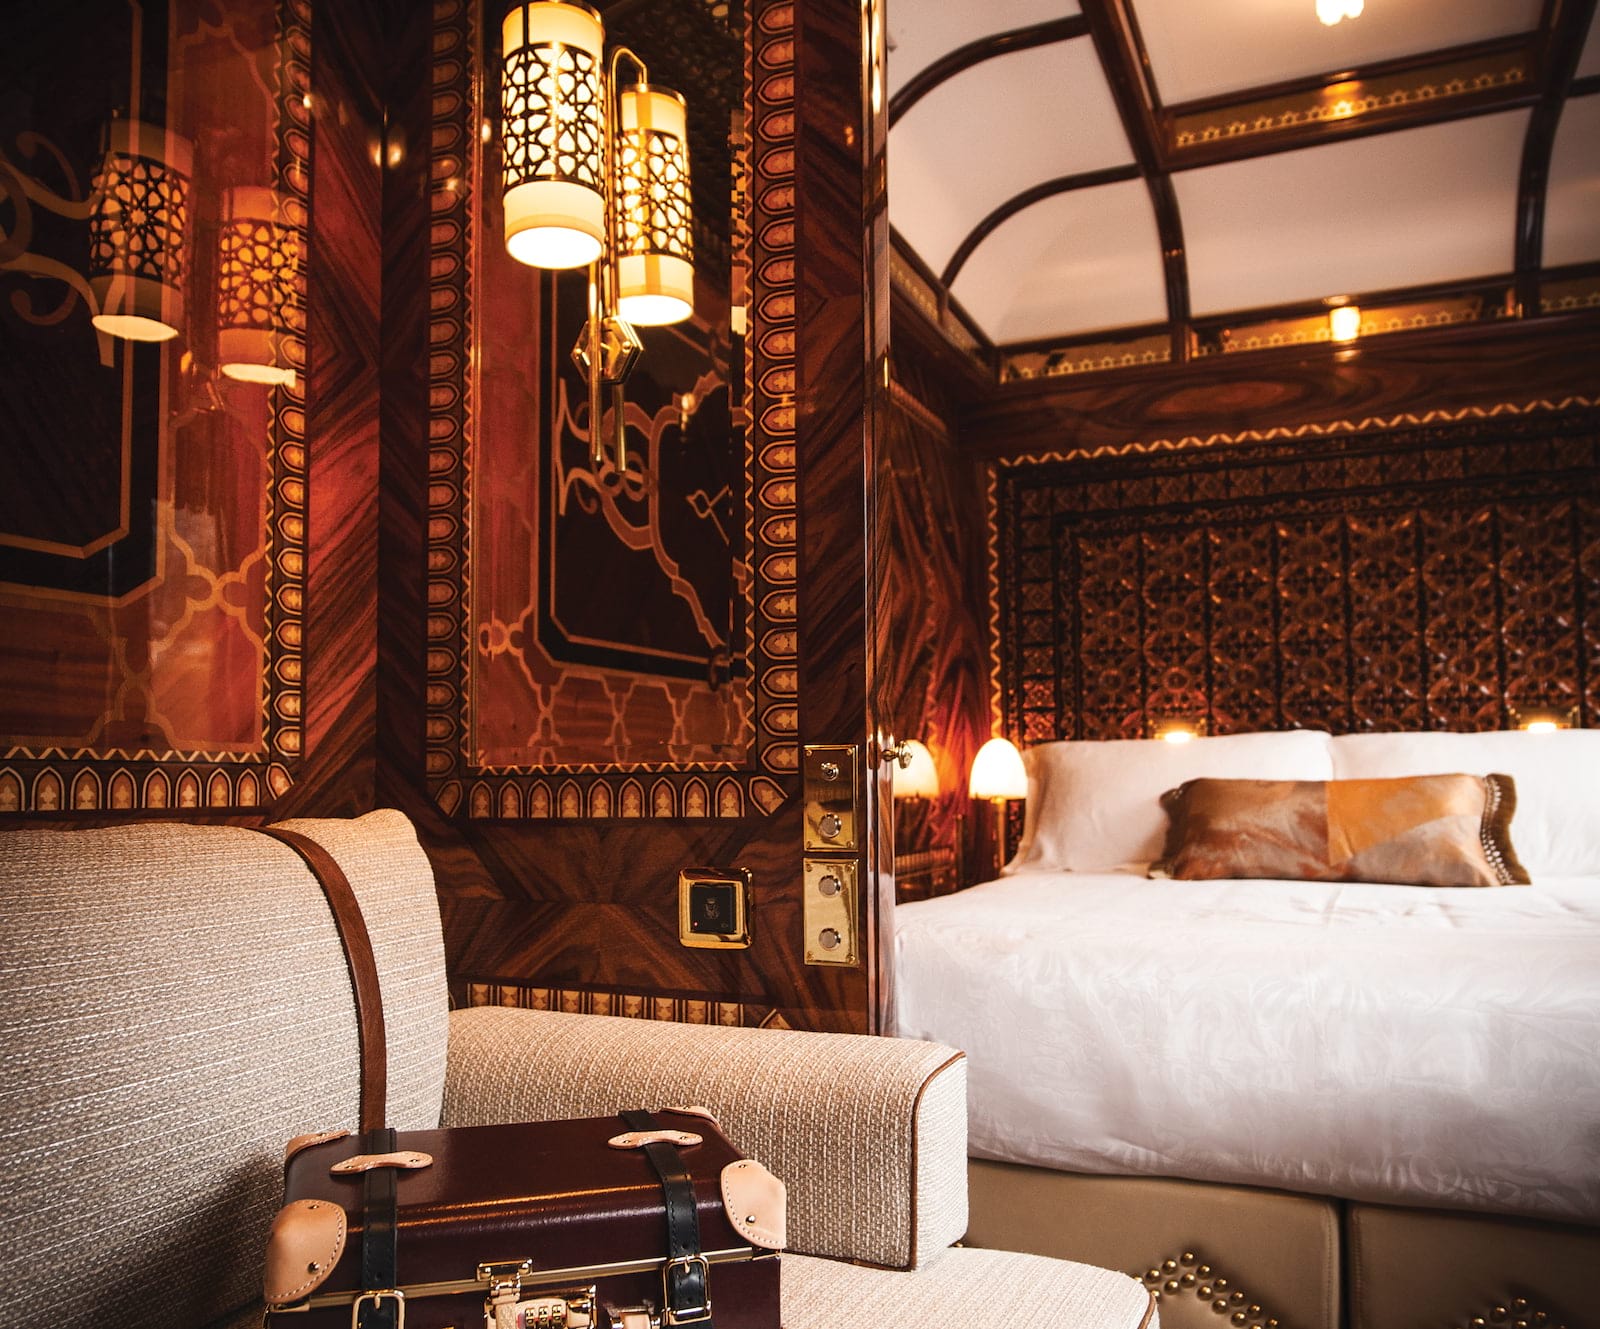 Montar el Orient Express: cómo es realmente en el icónico tren - 79